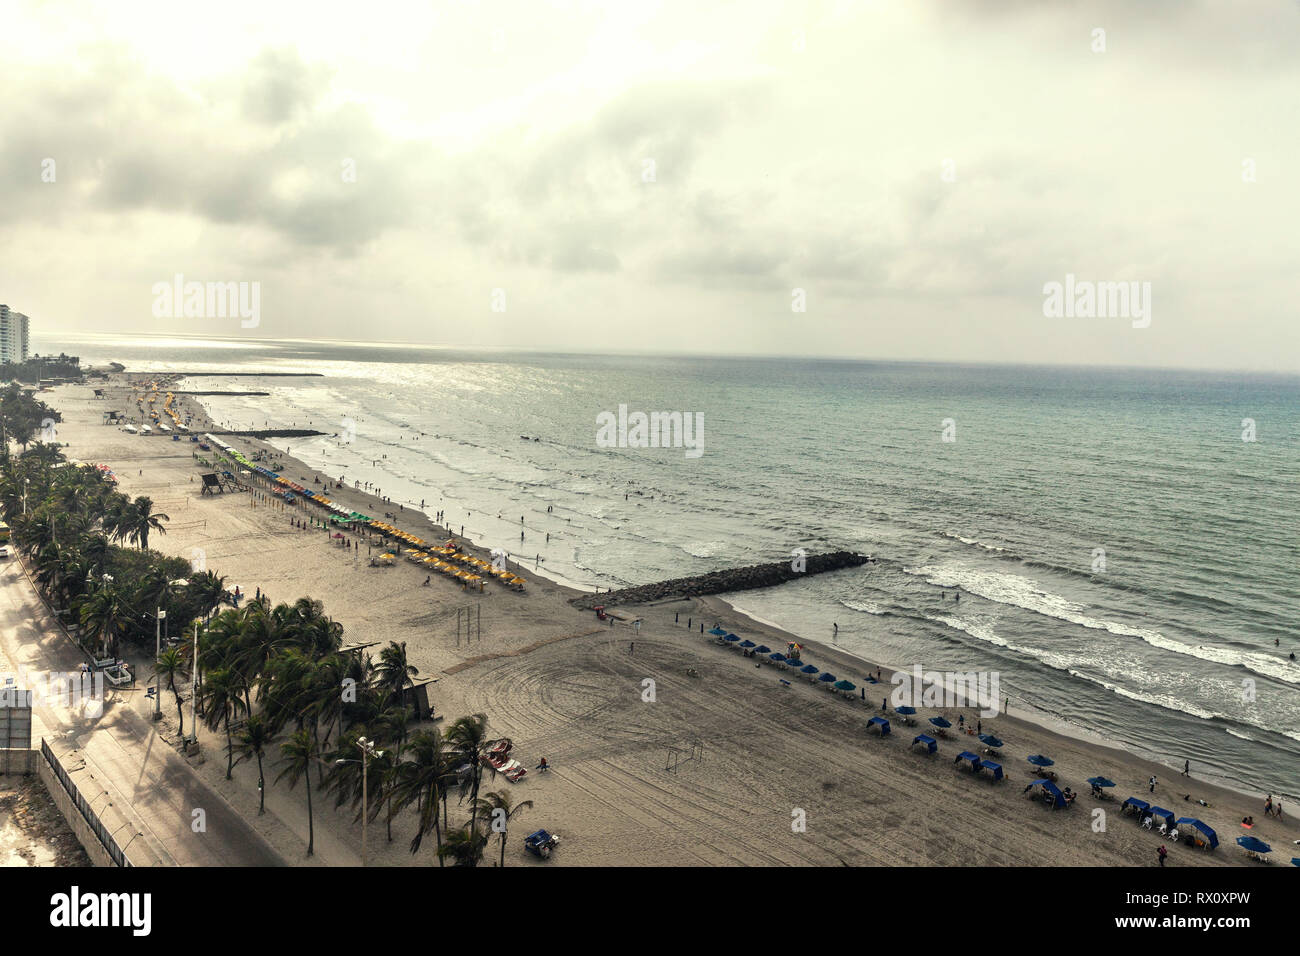 Vue aérienne de la plage de sable, Bocagrande Cartagena de Indias, Colombie. Banque D'Images